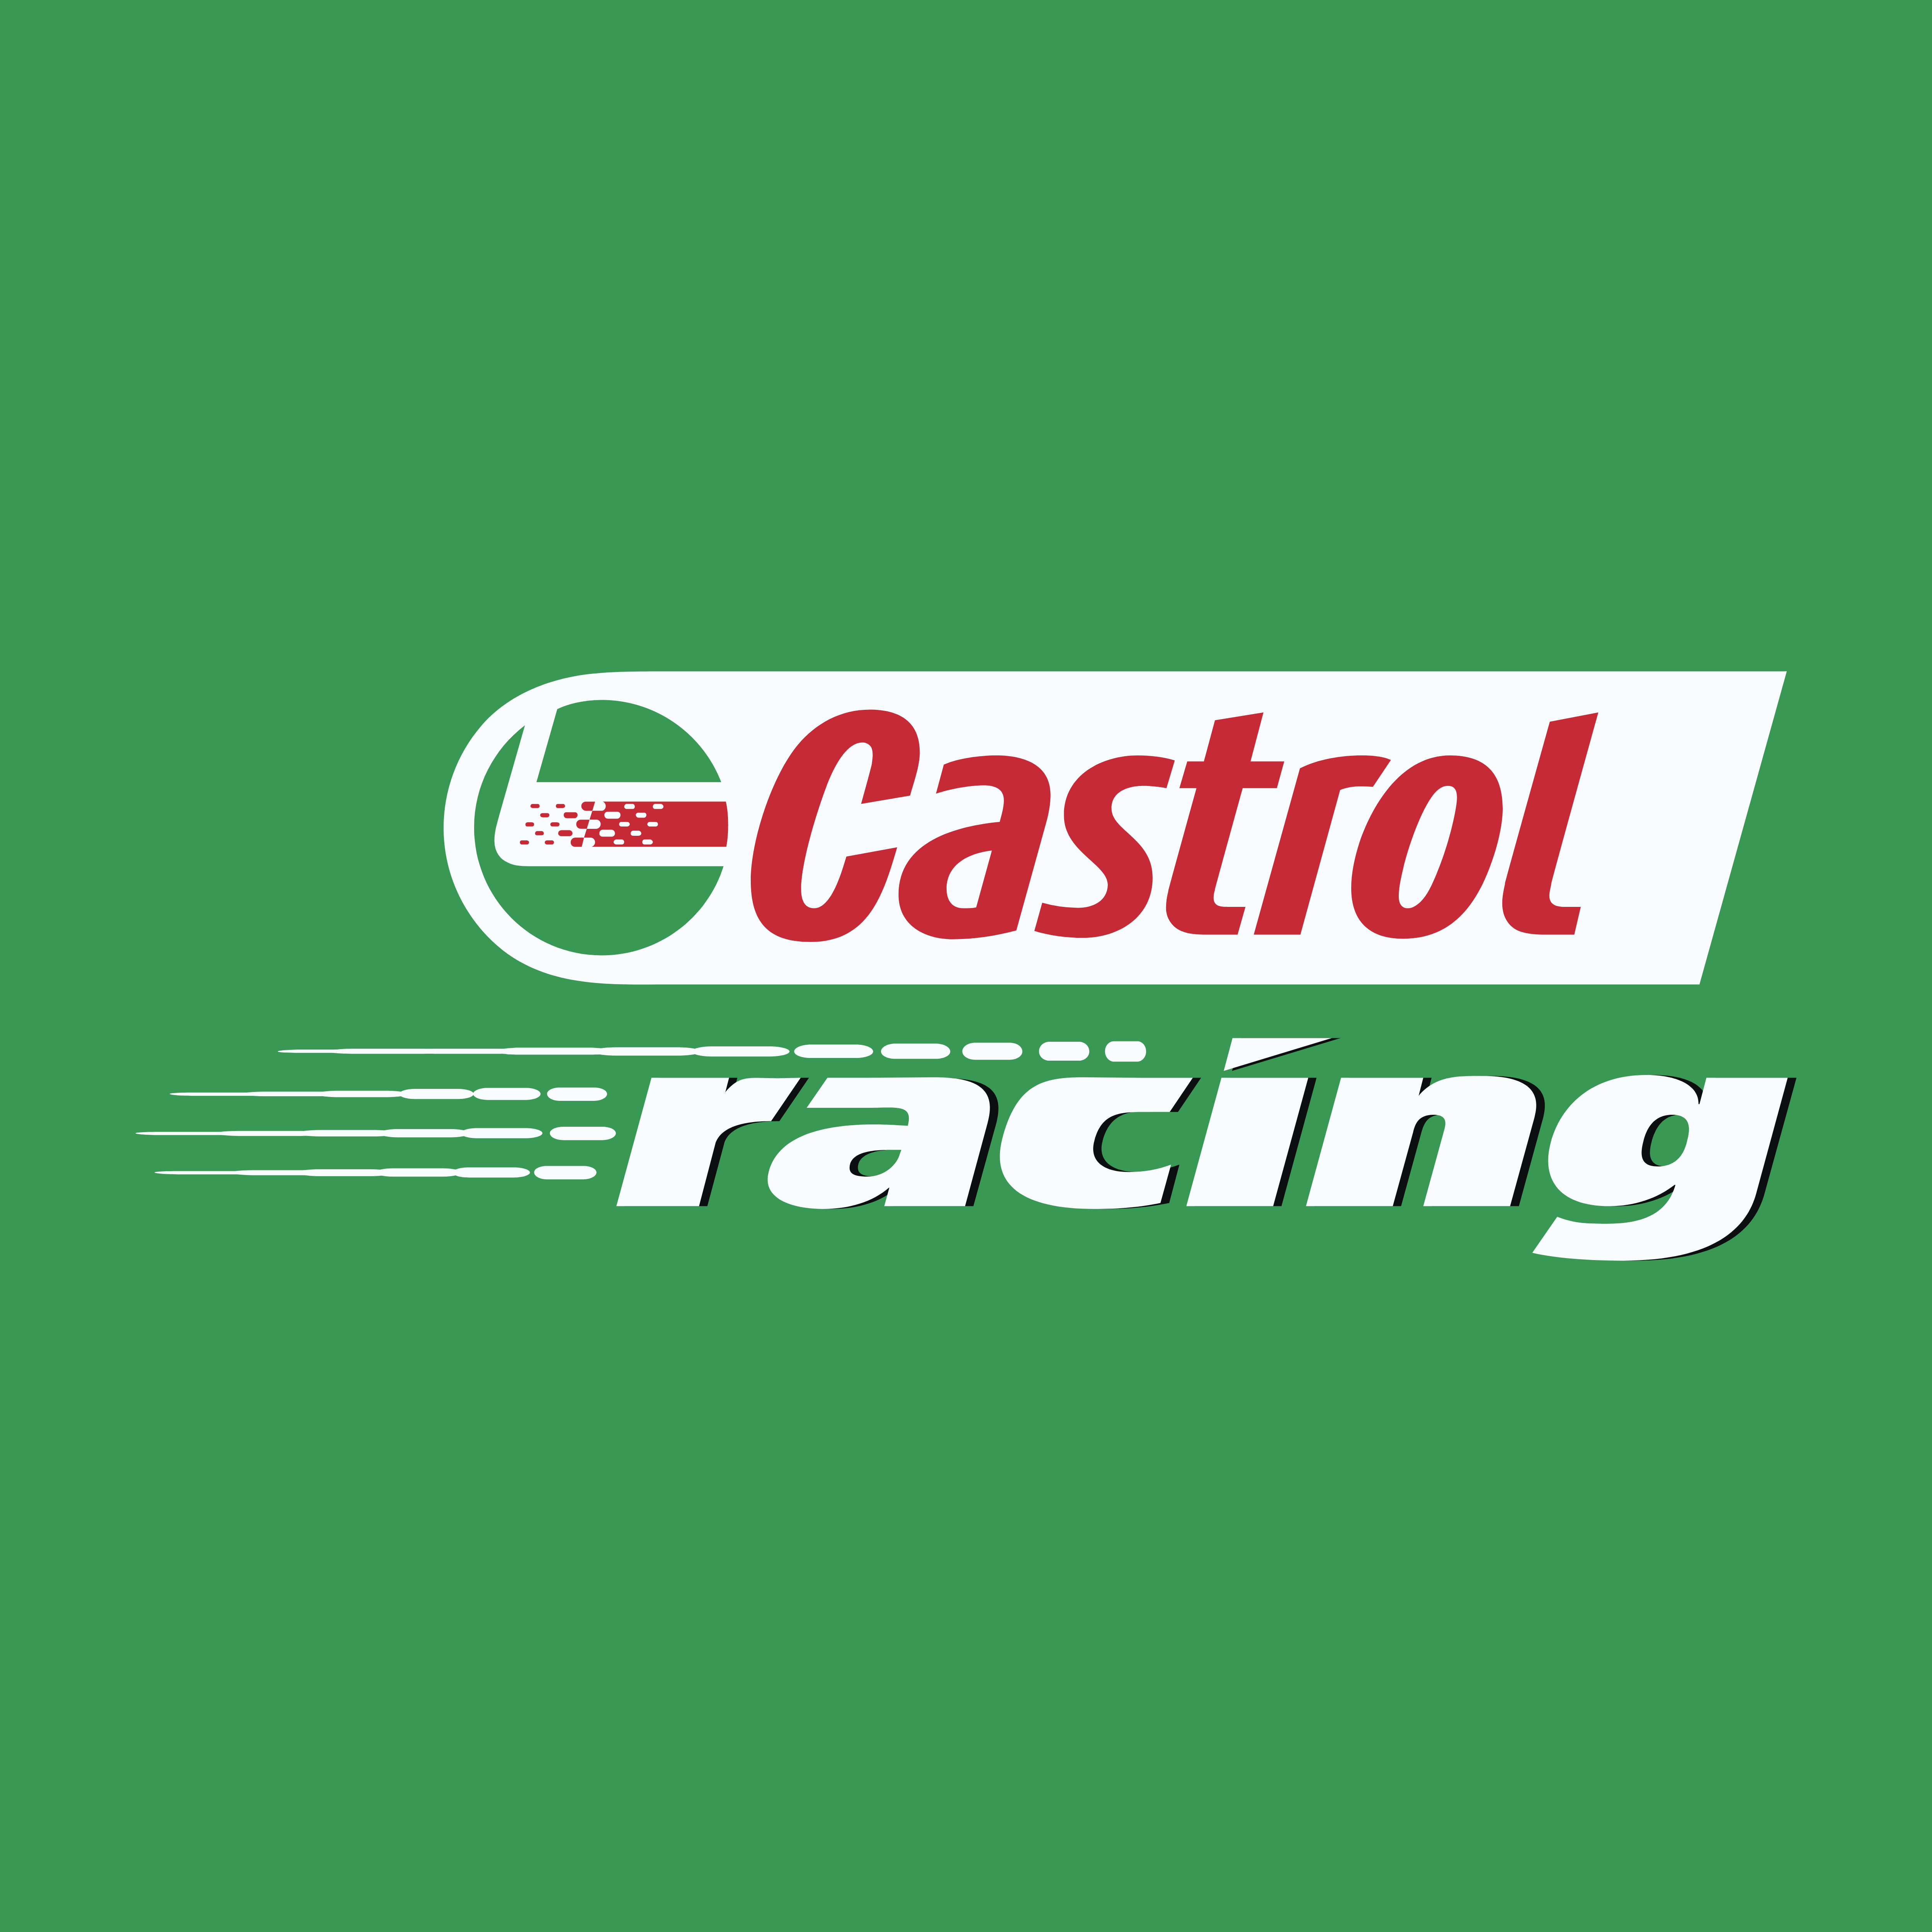 Castrol Racing logo. Castril Racing logo. Castrol Oil logo. Castrol logo Castrol logo.